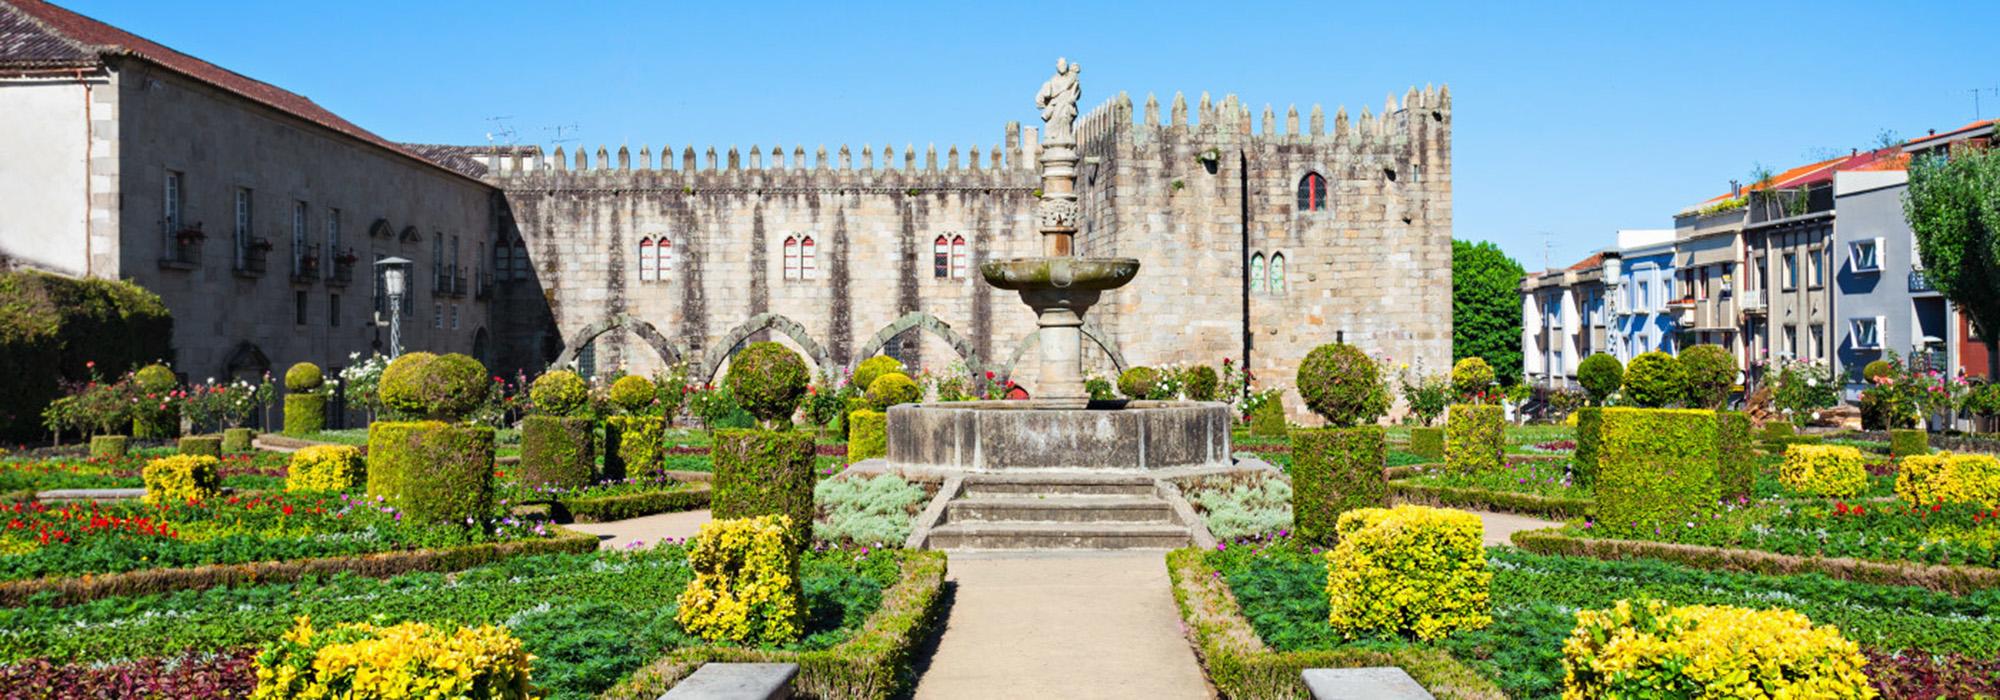 Jardim de Santa Barbara, Braga,Portugal